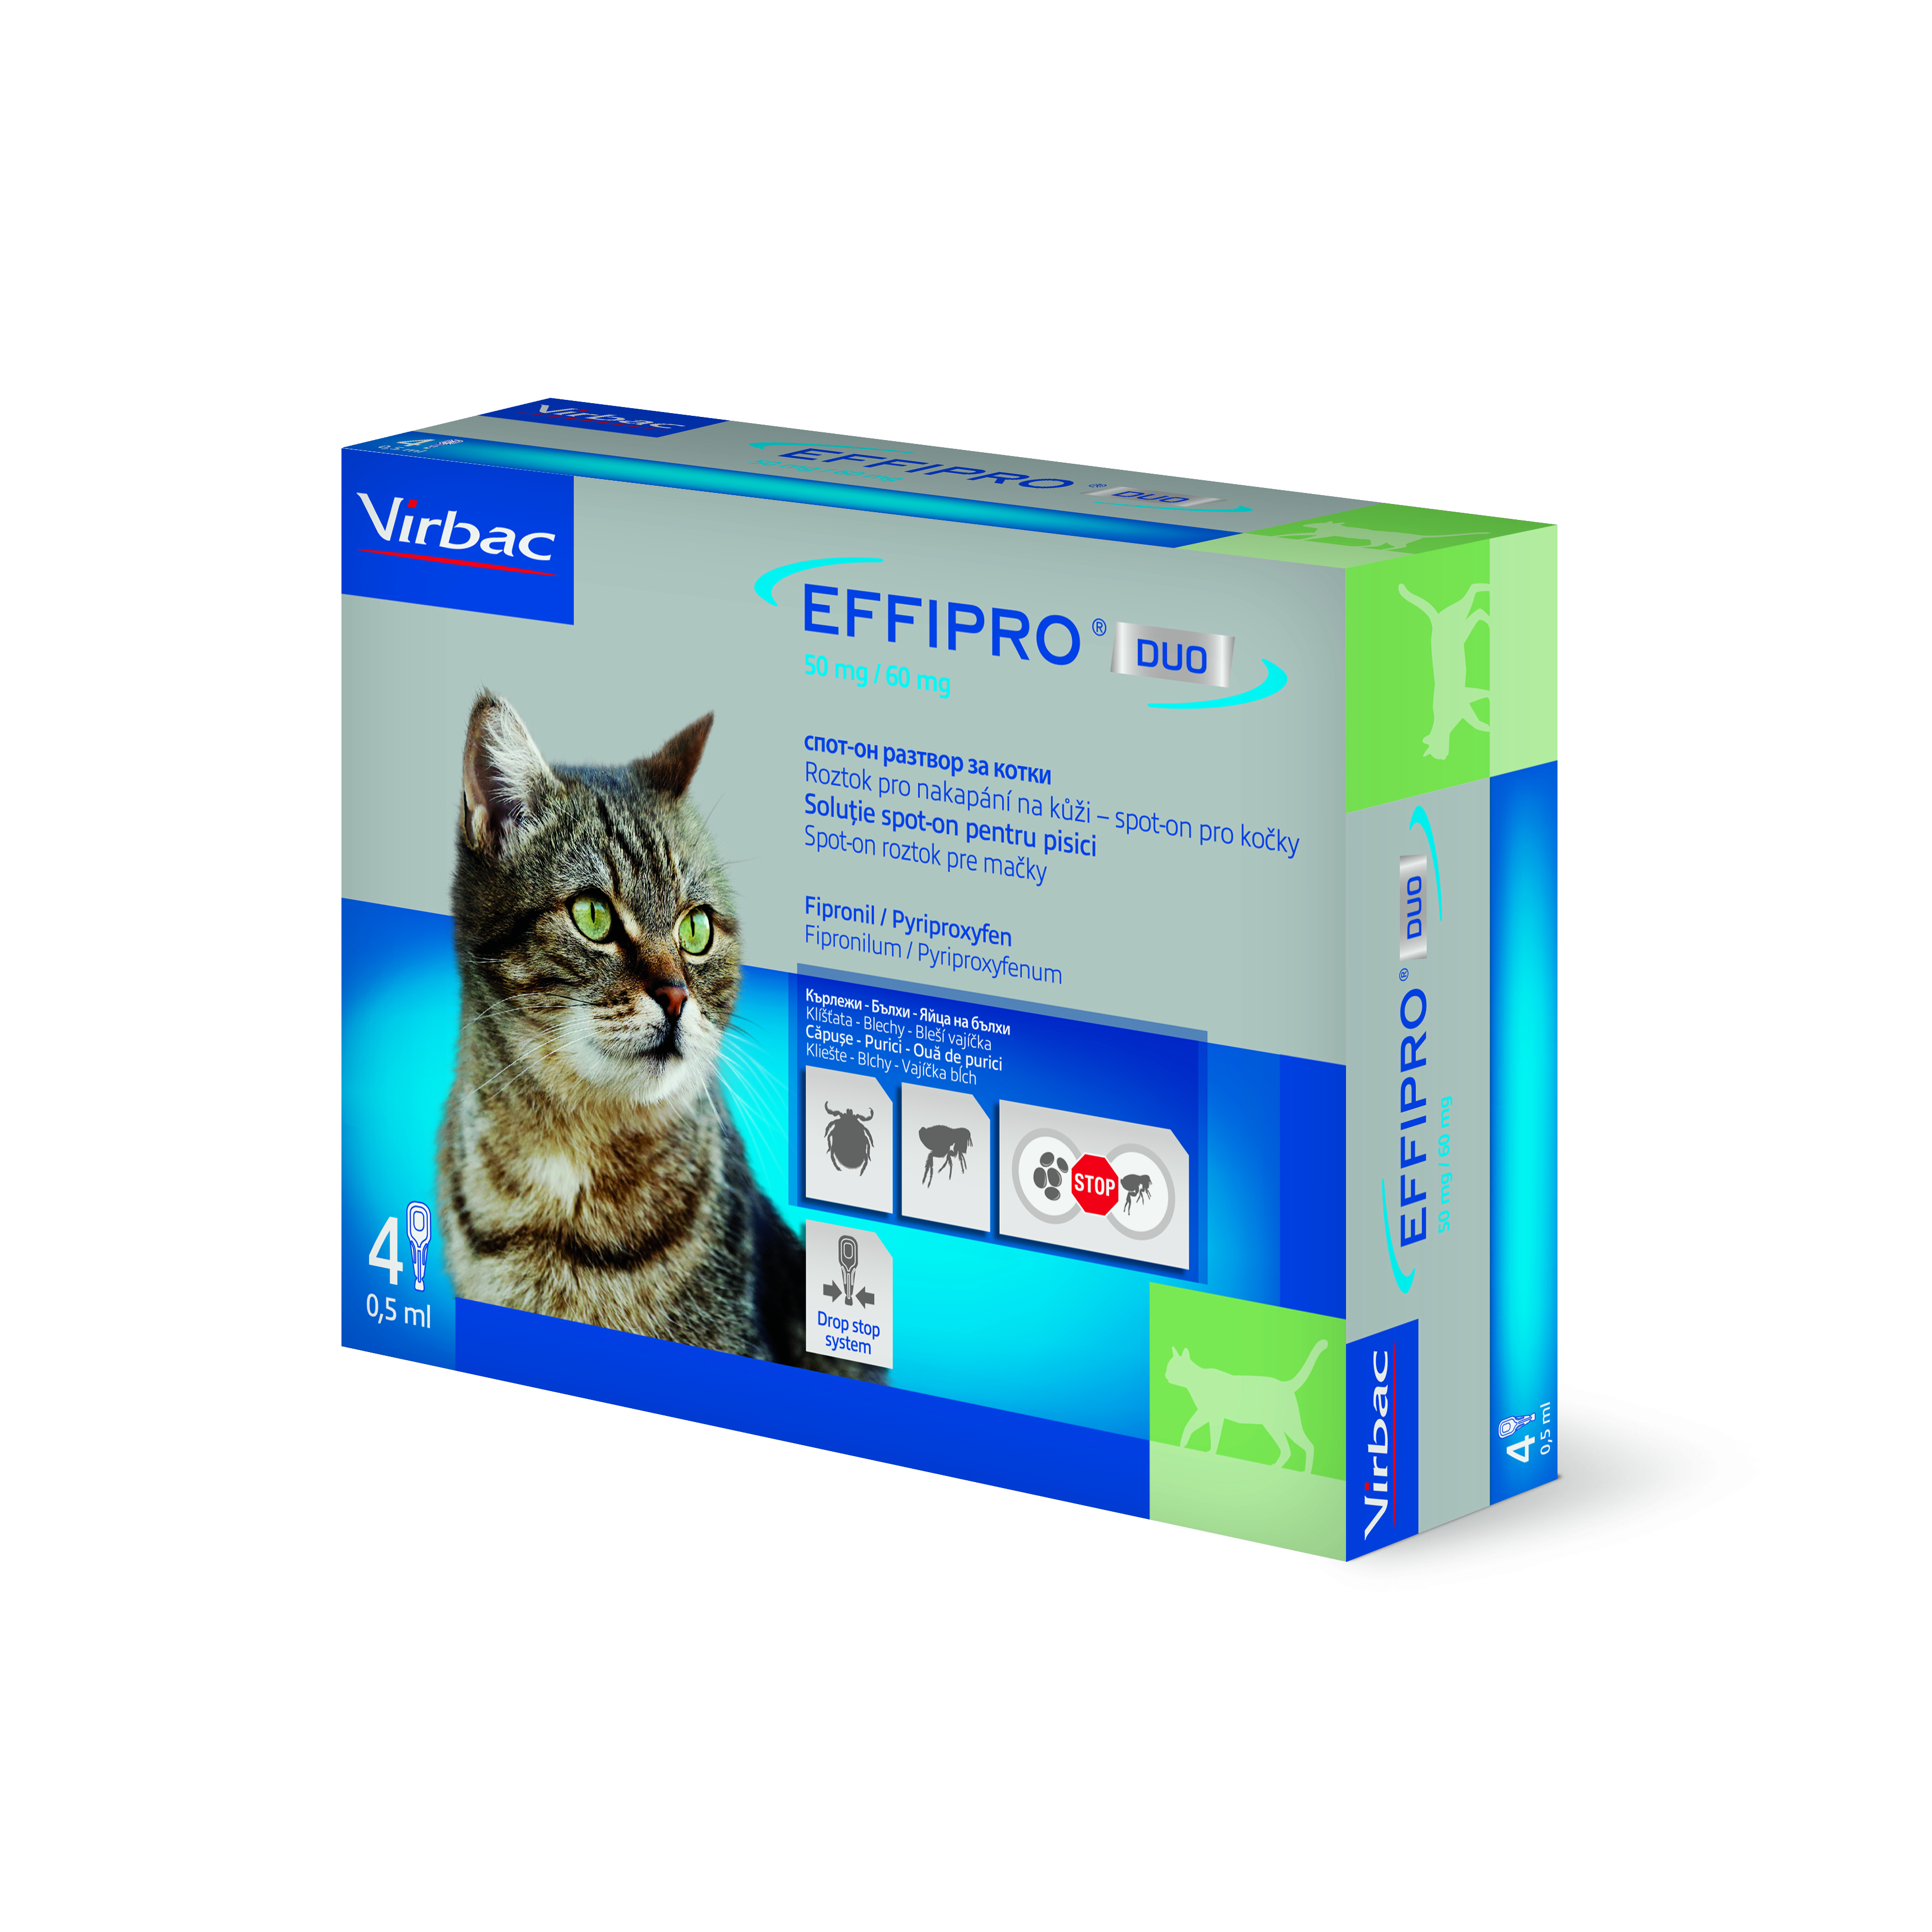 Effipro duo 50 mg/60 mg, roztok pro nakapání na kůži – spot-on pro kočky 4 x 0,5 ml